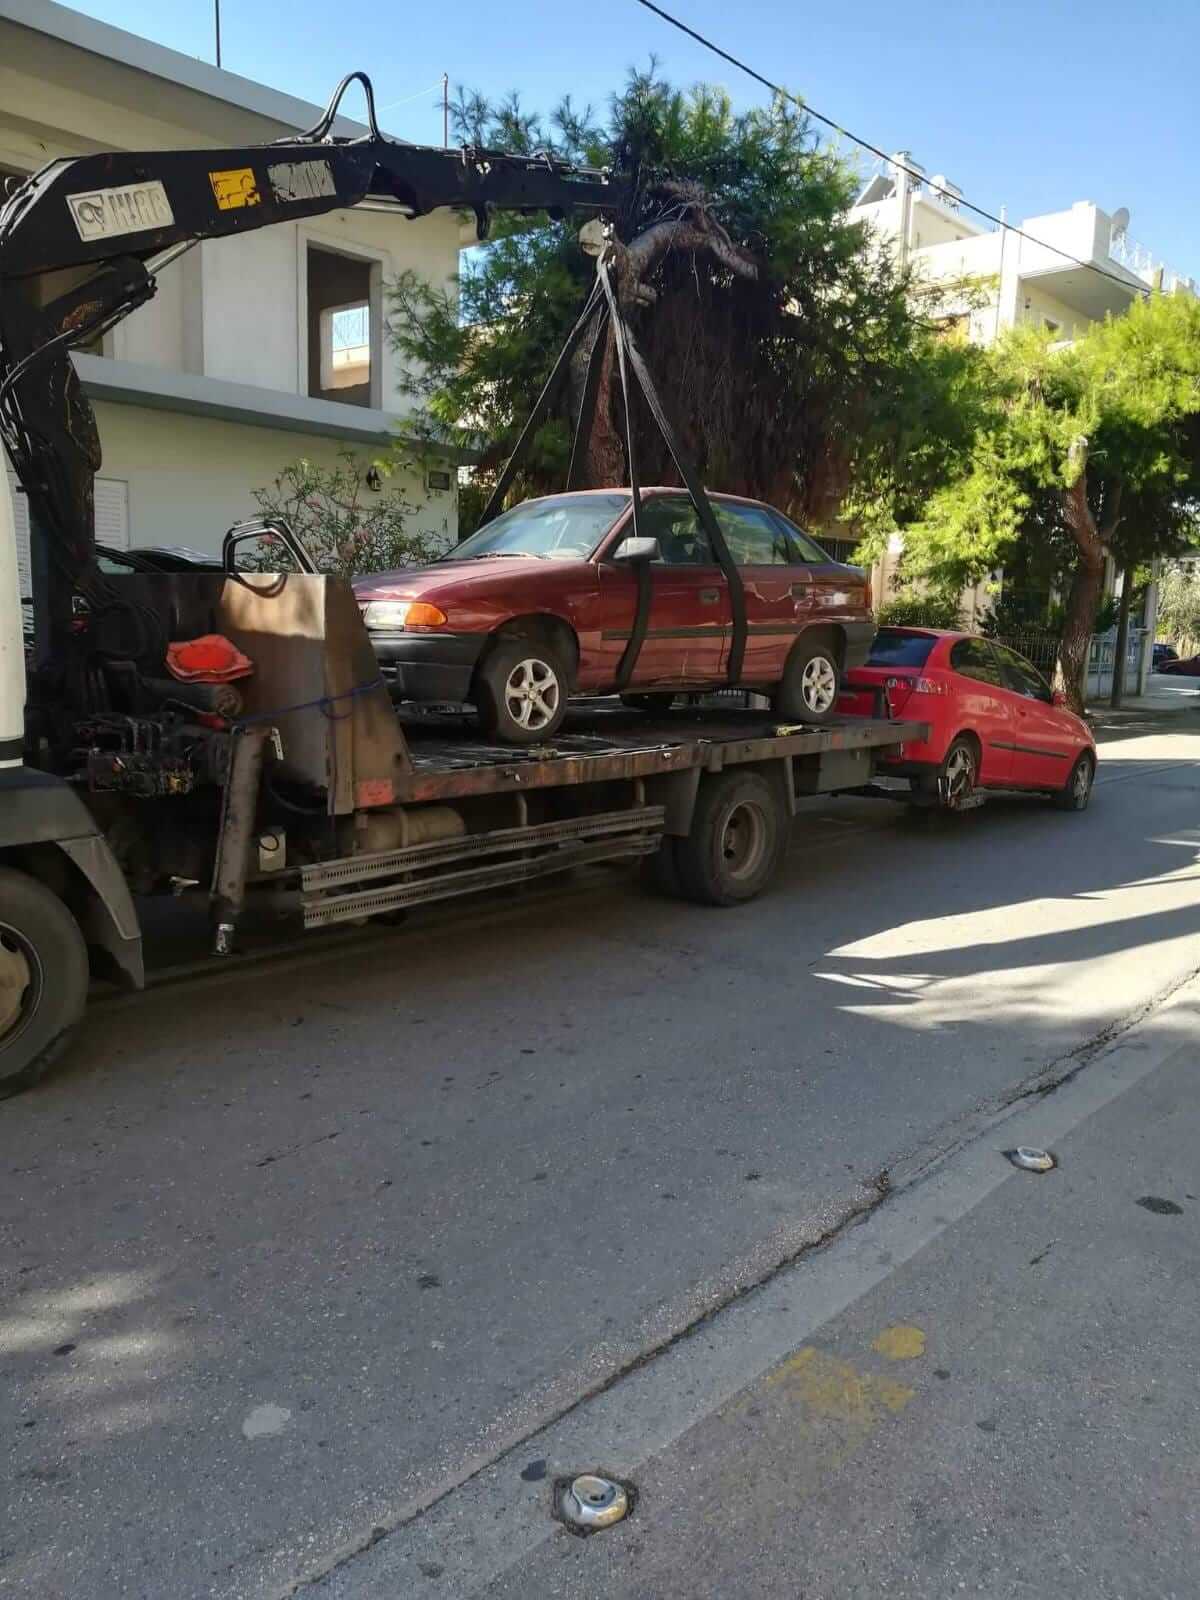 Δήμος Ελευσίνας : Ξεκίνησε η εκστρατεία περισυλλογής εγκαταλελειμμένων οχημάτων